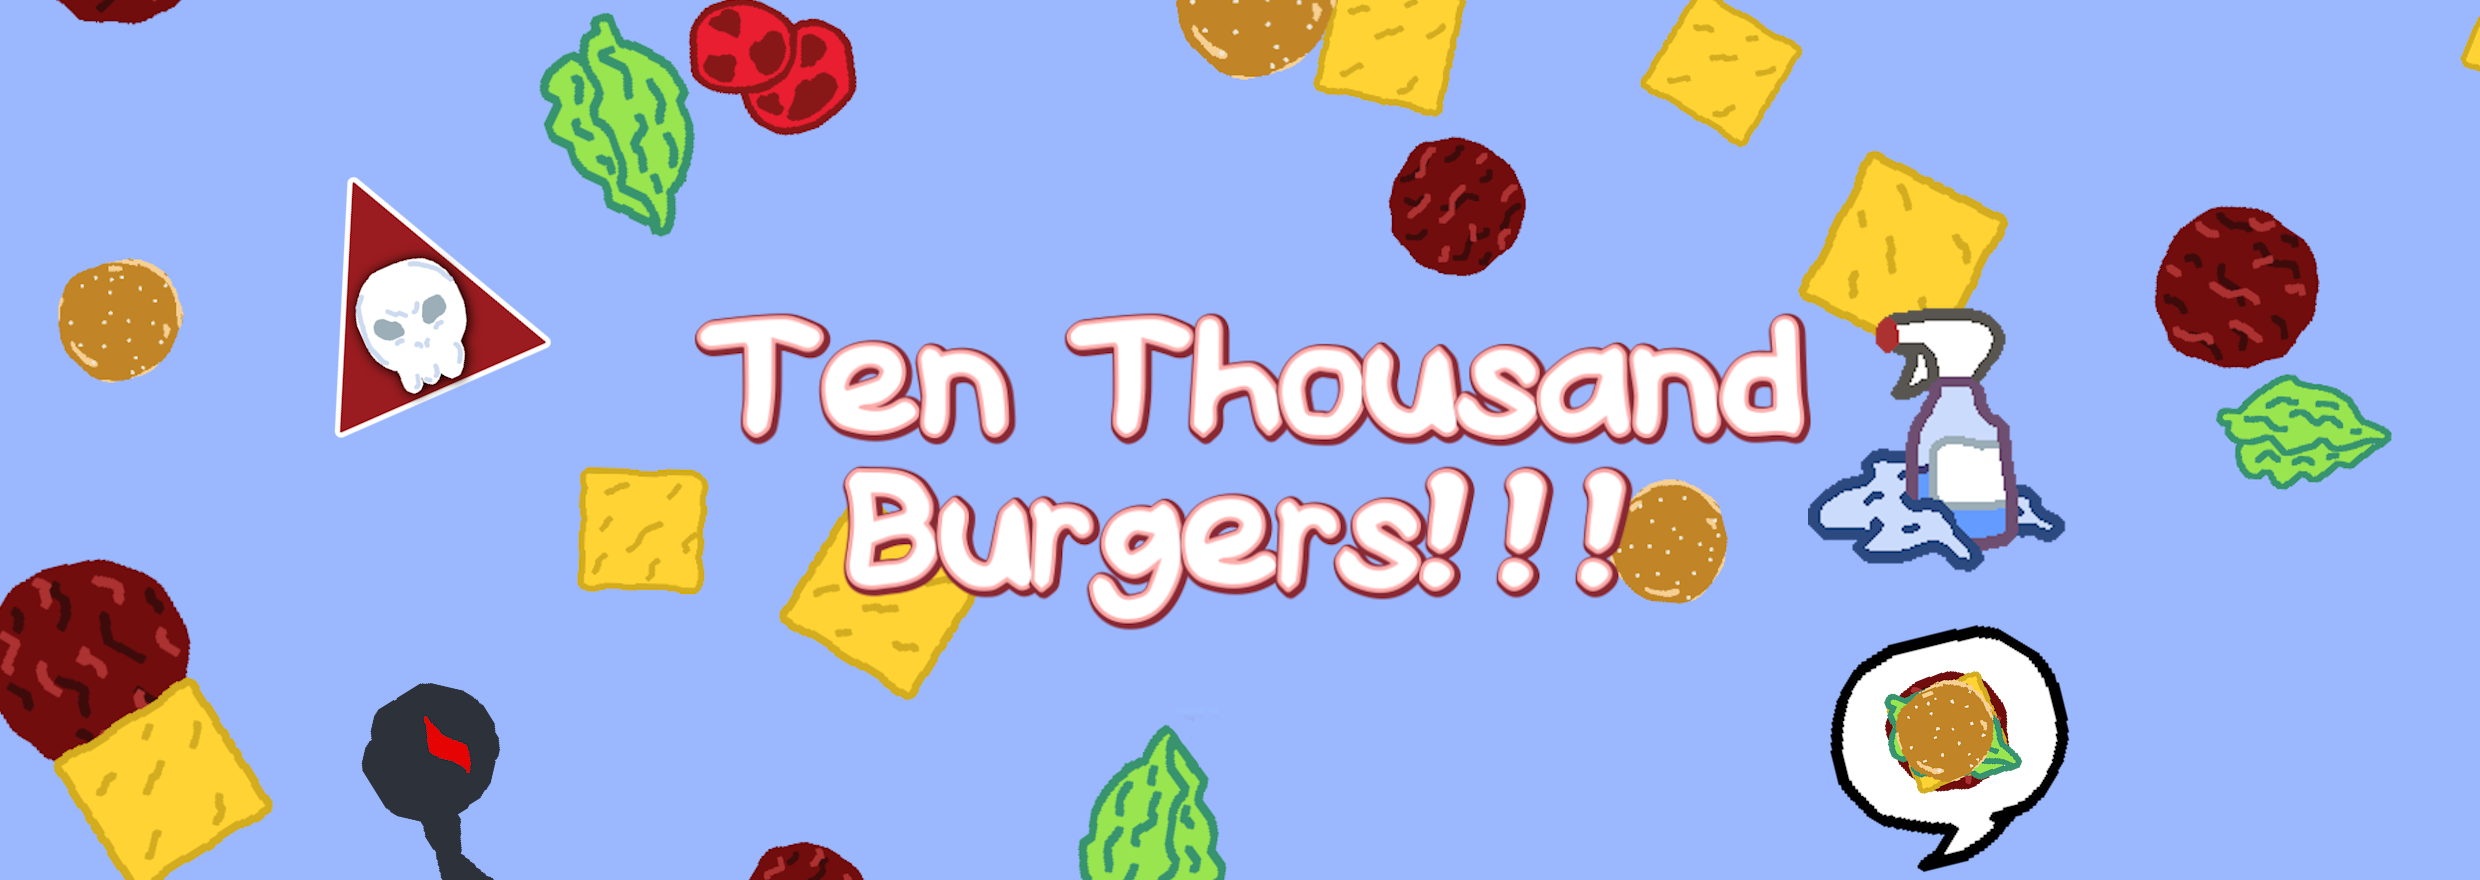 Ten Thousand Burgers!!!